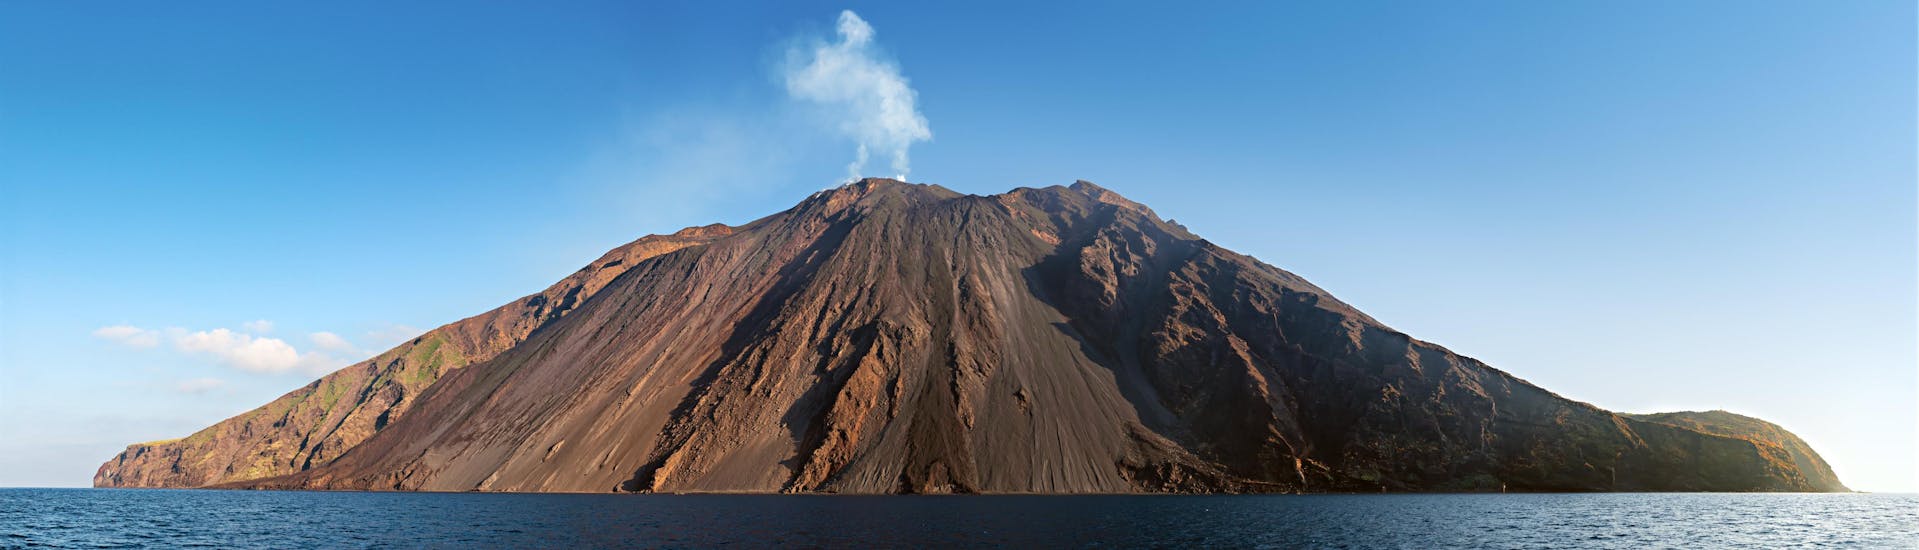 Immagine del vulcano Stromboli, un'attrazione turistica molto popolare in Sicilia.